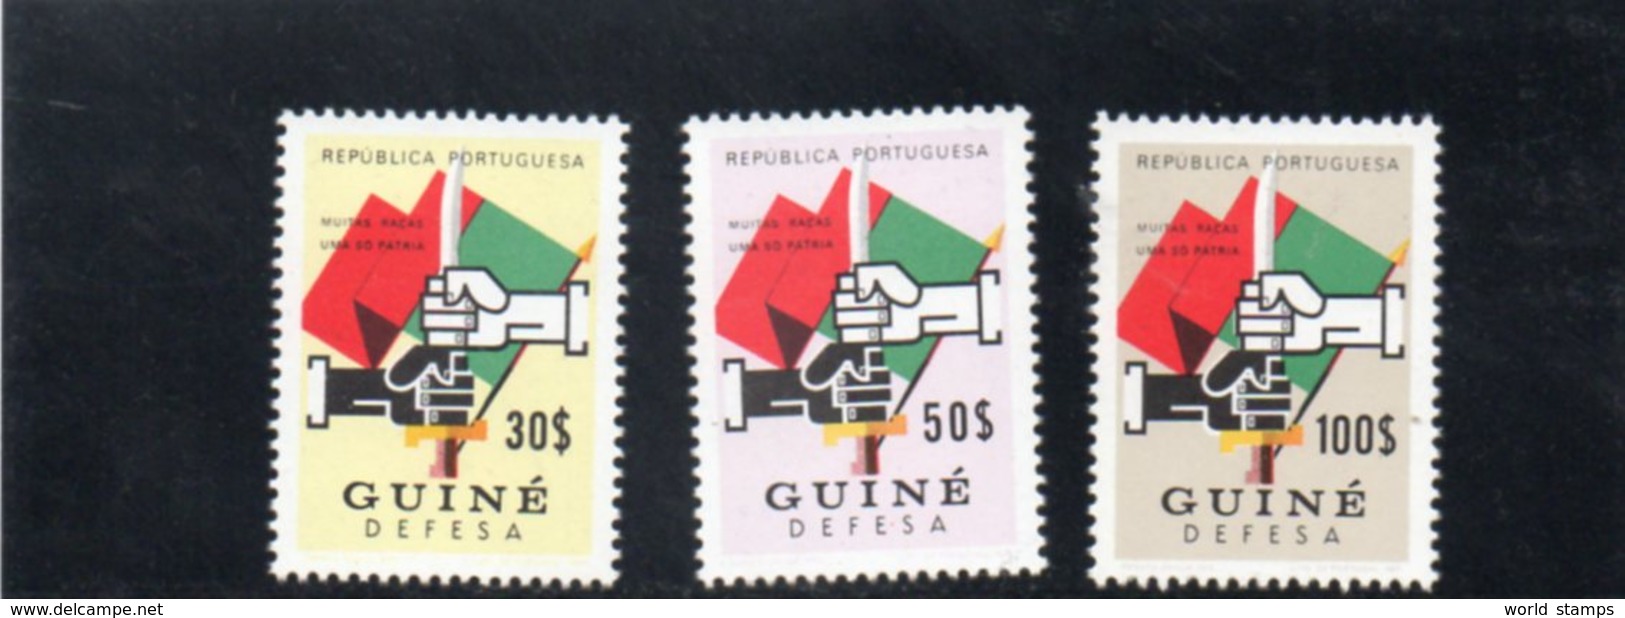 GUINEE PORT. 1968 ** - Guinée Portugaise